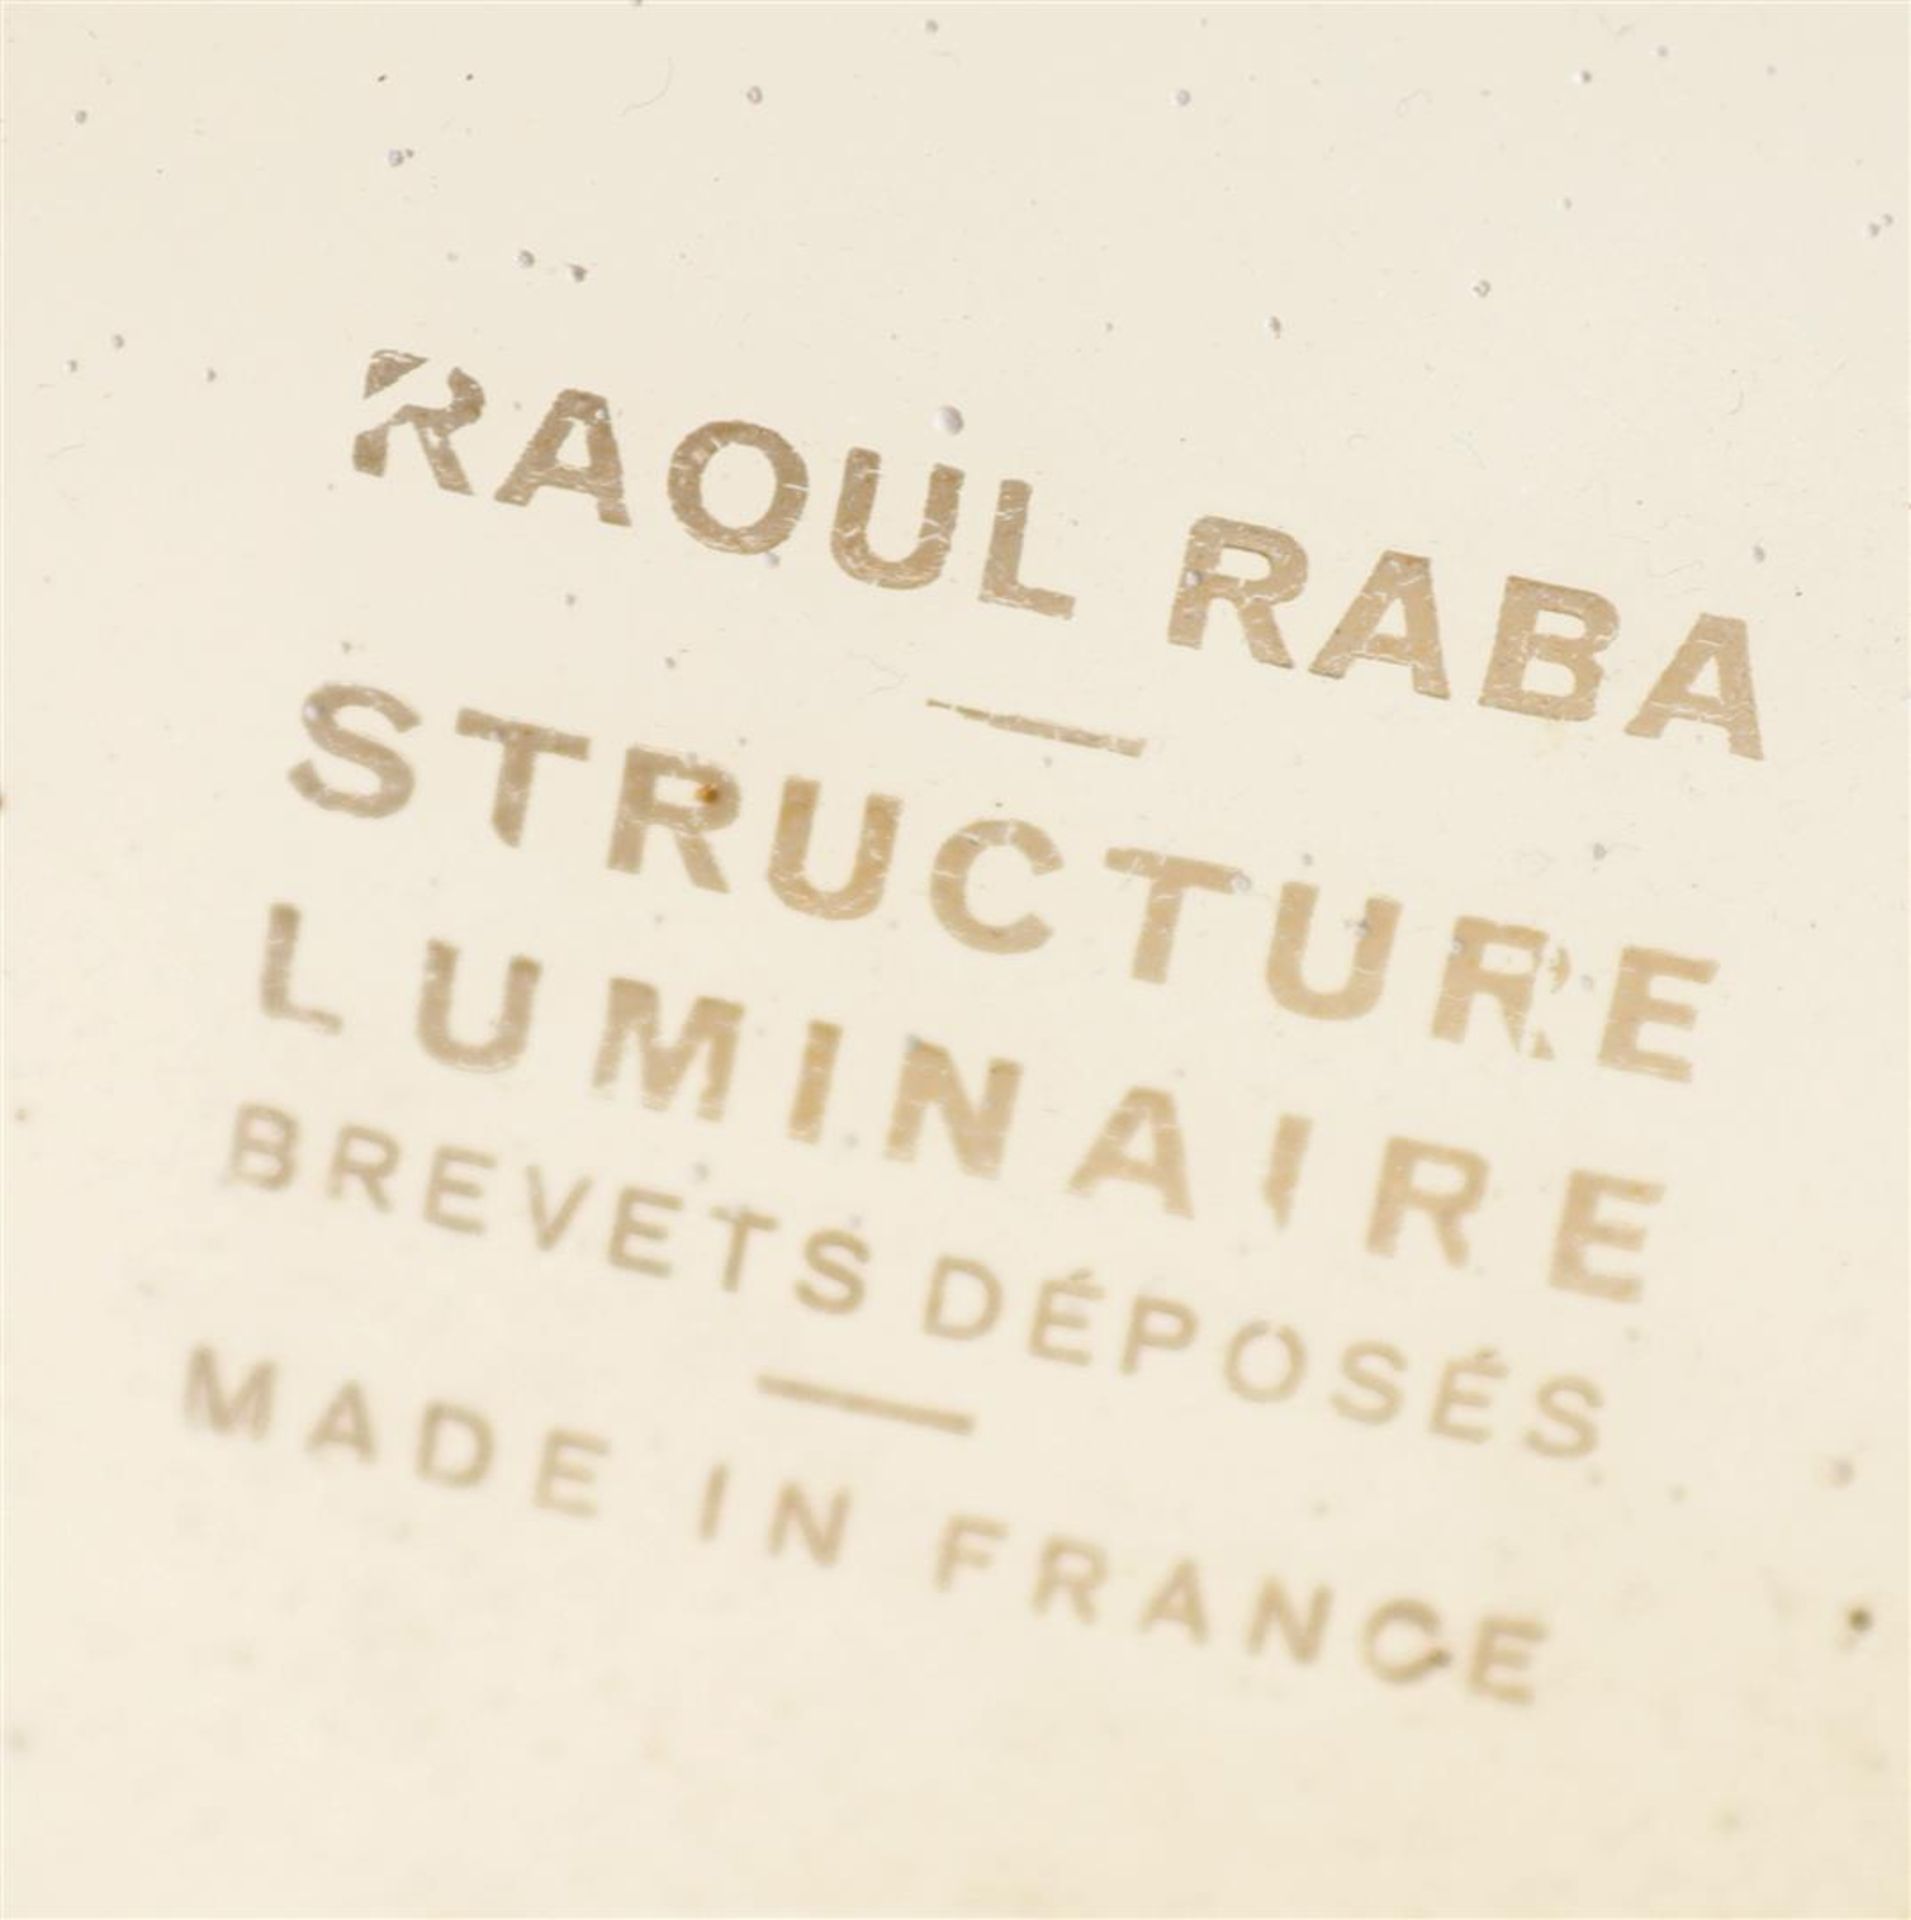 Raoul Raba - Image 2 of 3